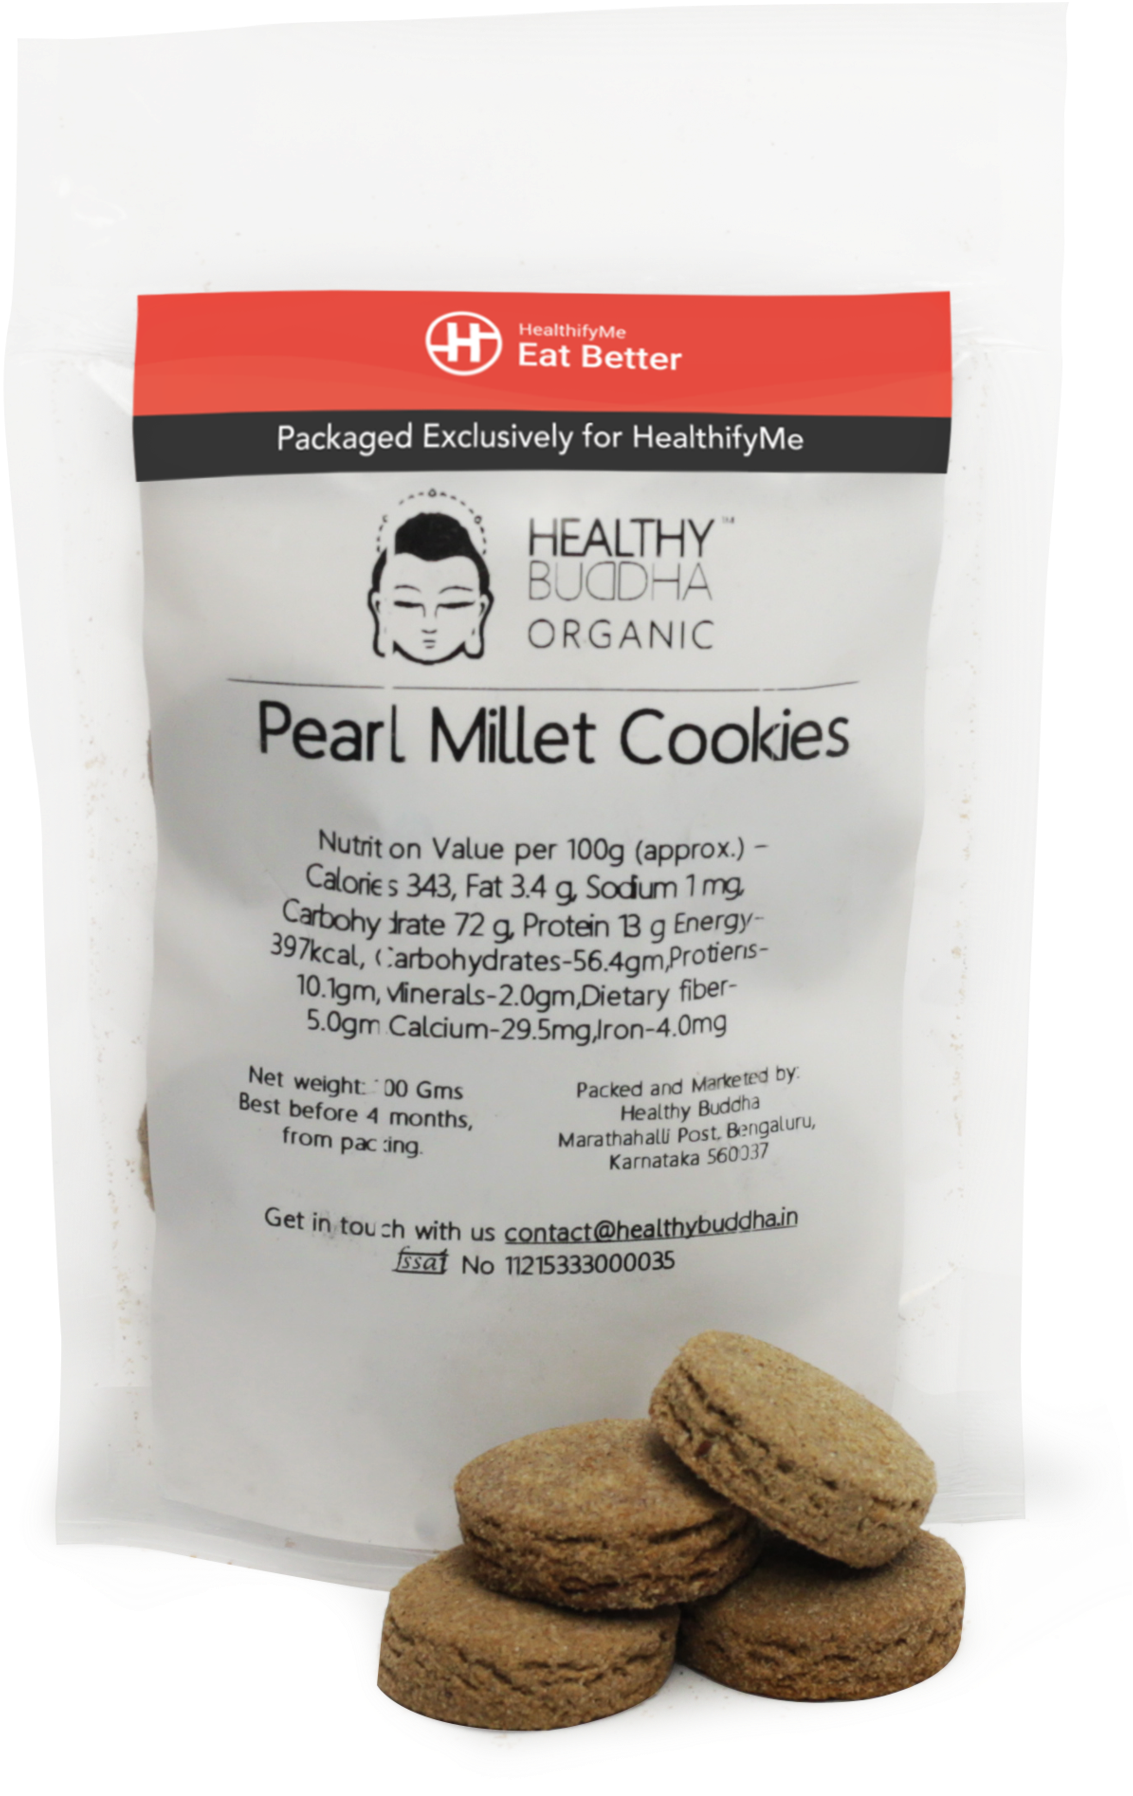 Pearl Millet Cookies, Pack Of 2 - Sandwich Cookies (2048x2048), Png Download